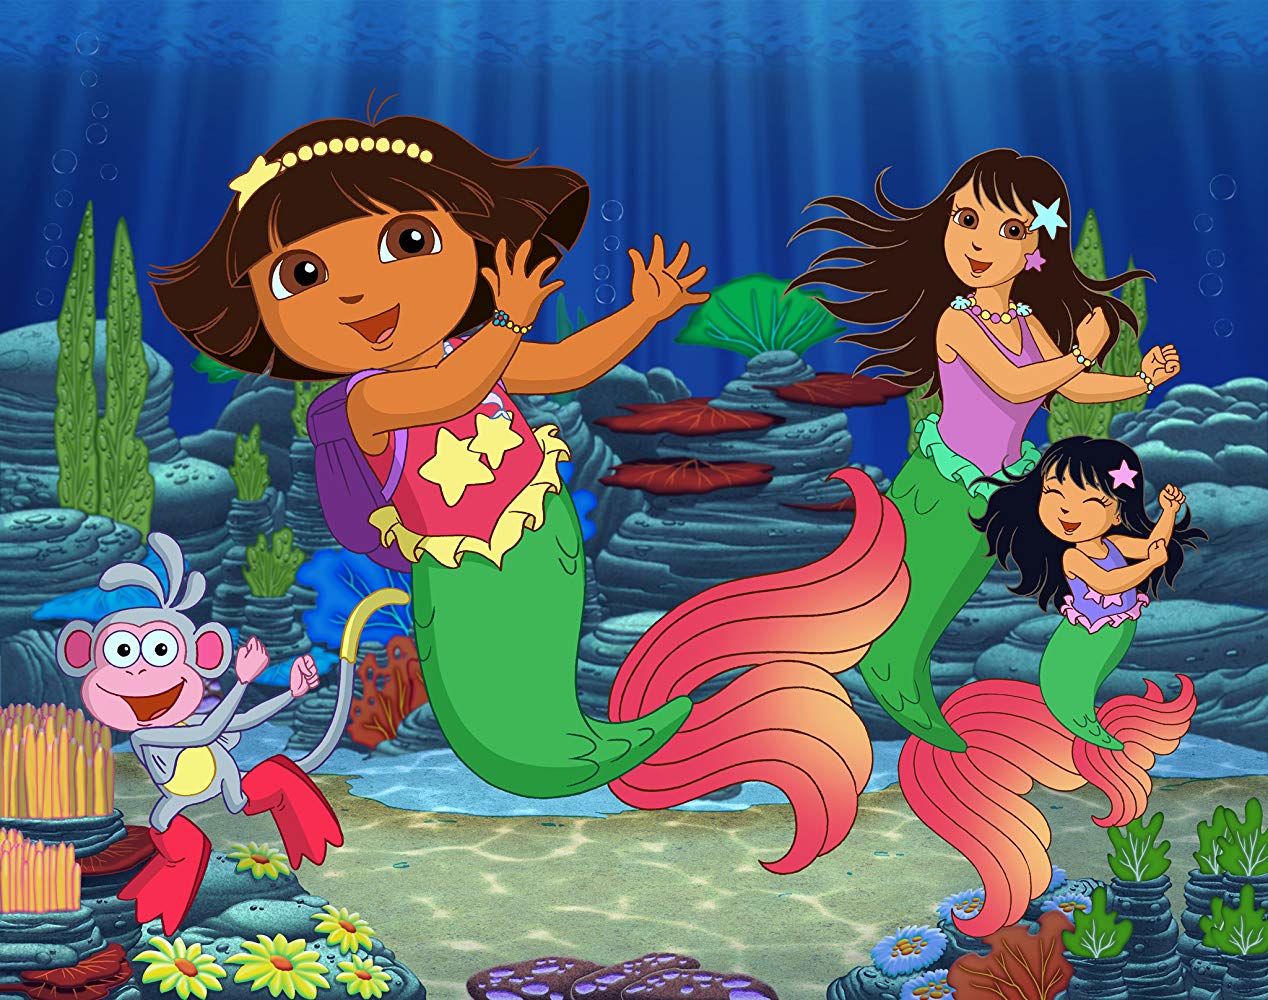 Dora's Rescue in Mermaid Kingdom - Dora the Explorer S07E03 | TVmaze